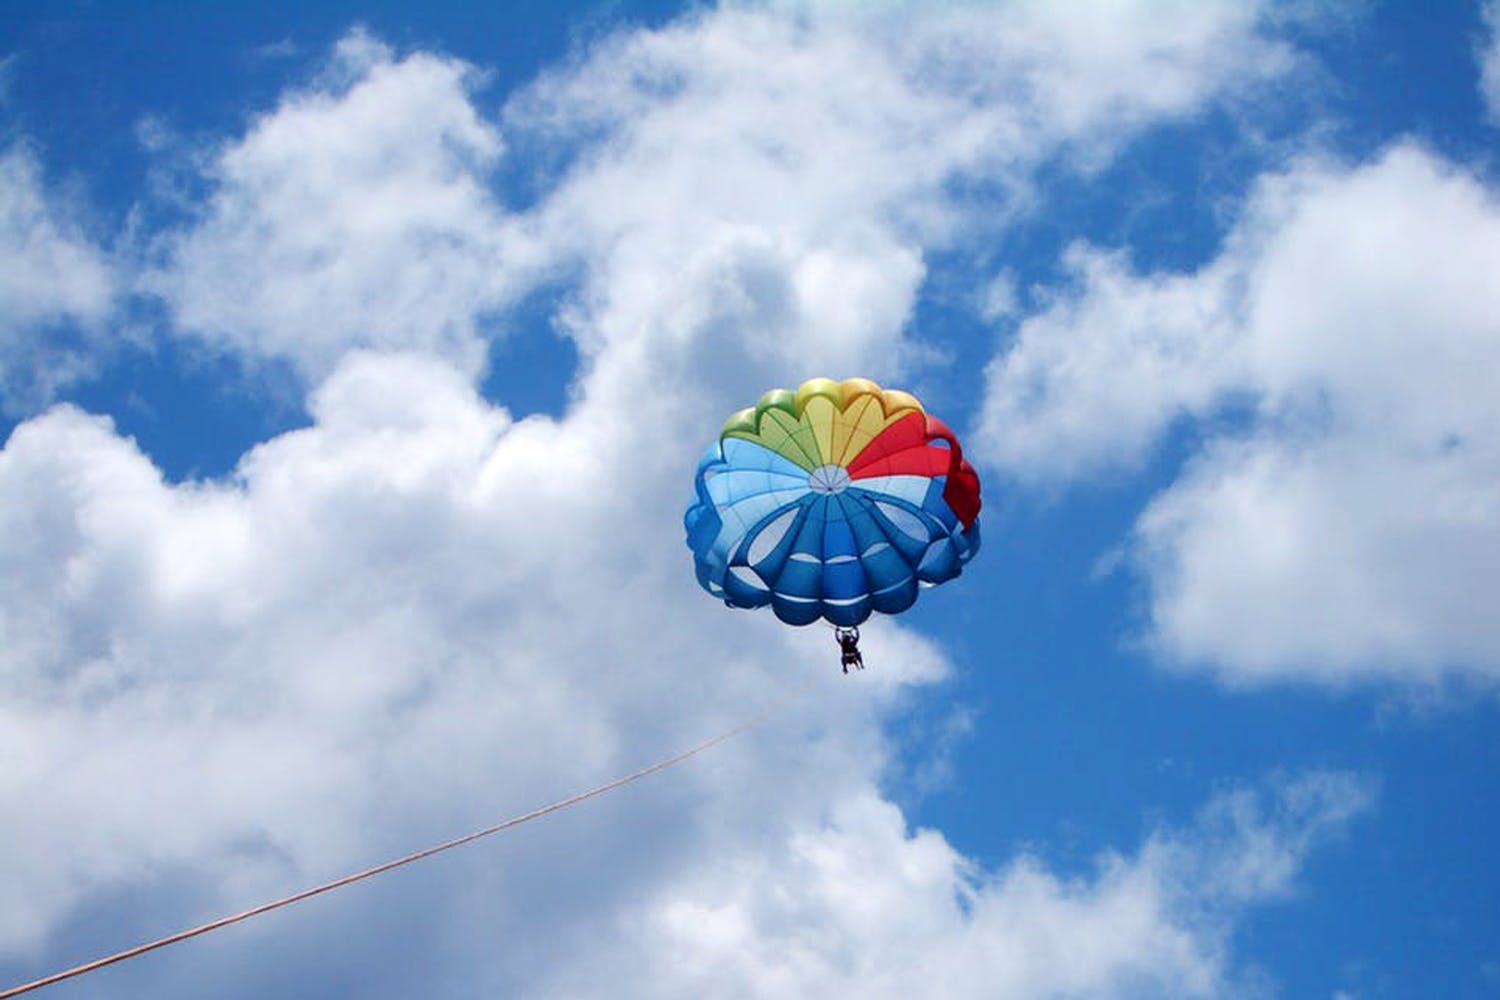 Sky,Parasailing,Parachute,Cloud,Daytime,Mode of transport,Cumulus,Parachuting,Kite sports,Fun